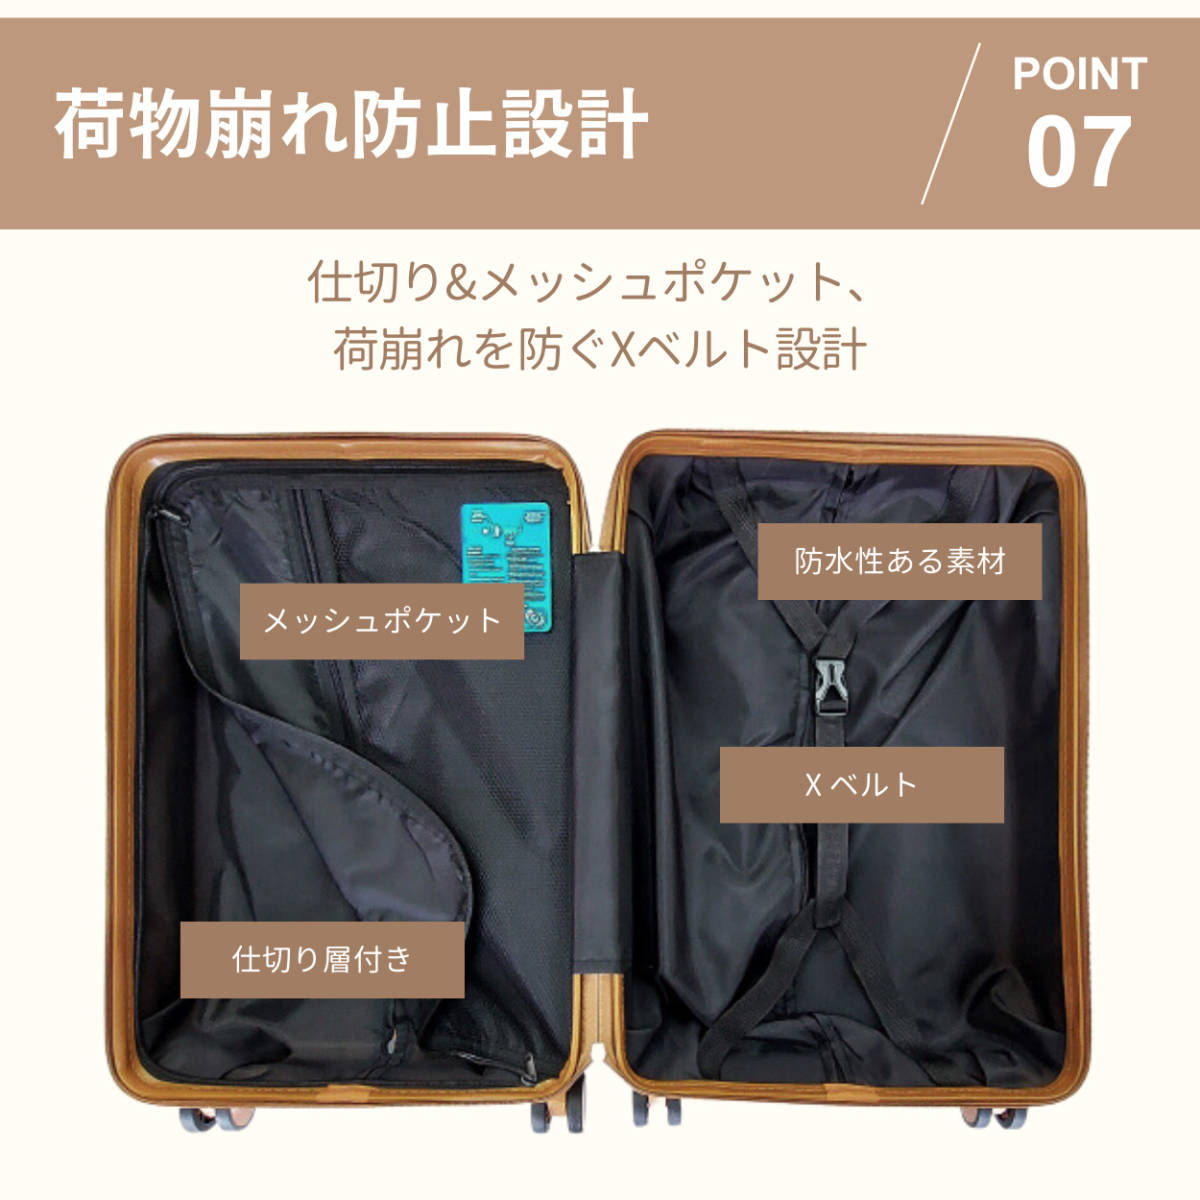 RIOU Carry кейс чемодан женский S размер одиночный товар 